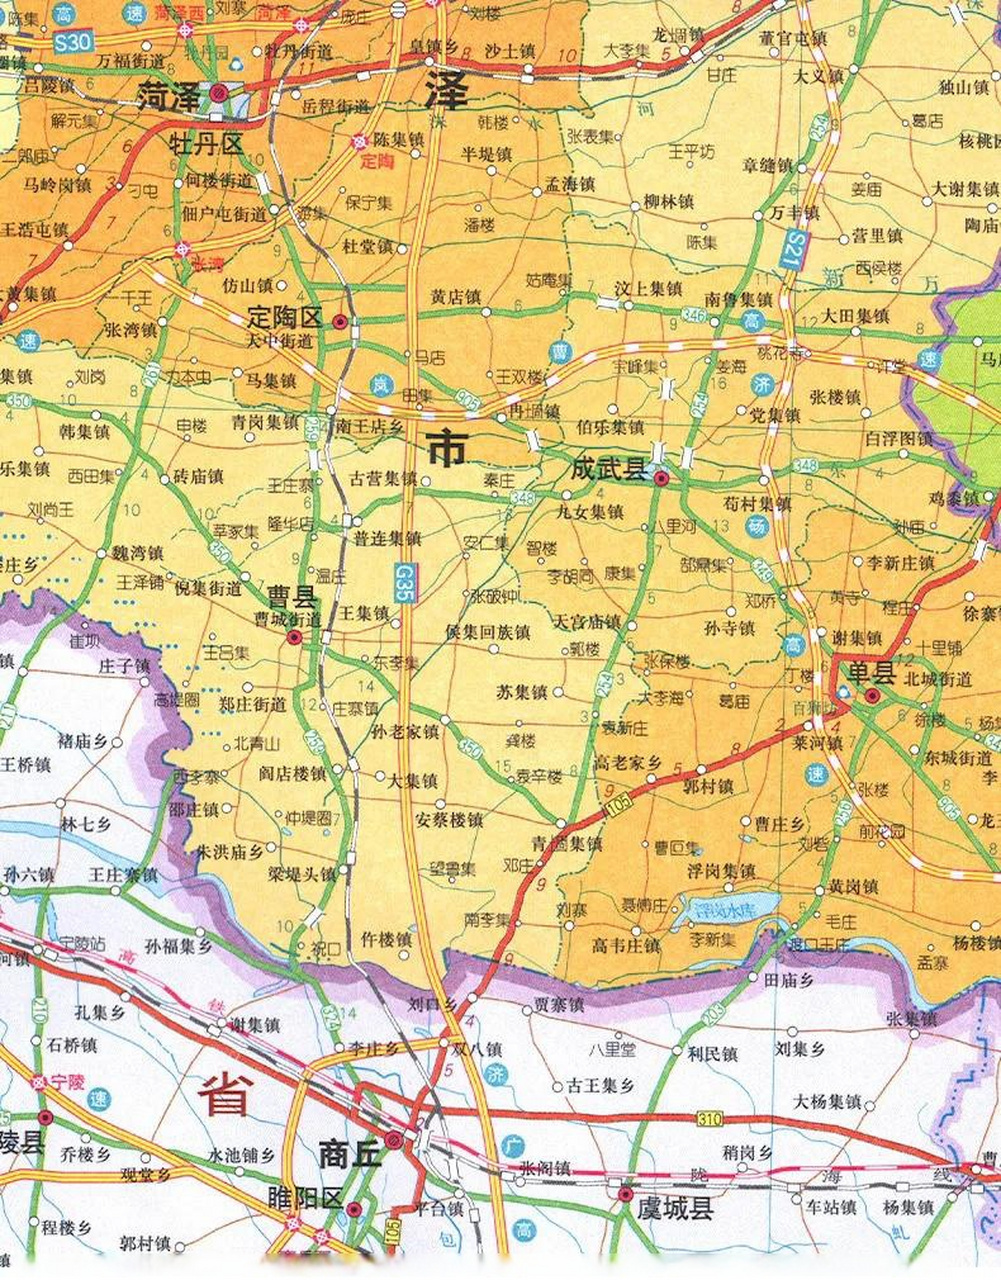 山东曹县隶属于菏泽市,但曹县县城在菏泽市与商丘市中间,距离差不多远